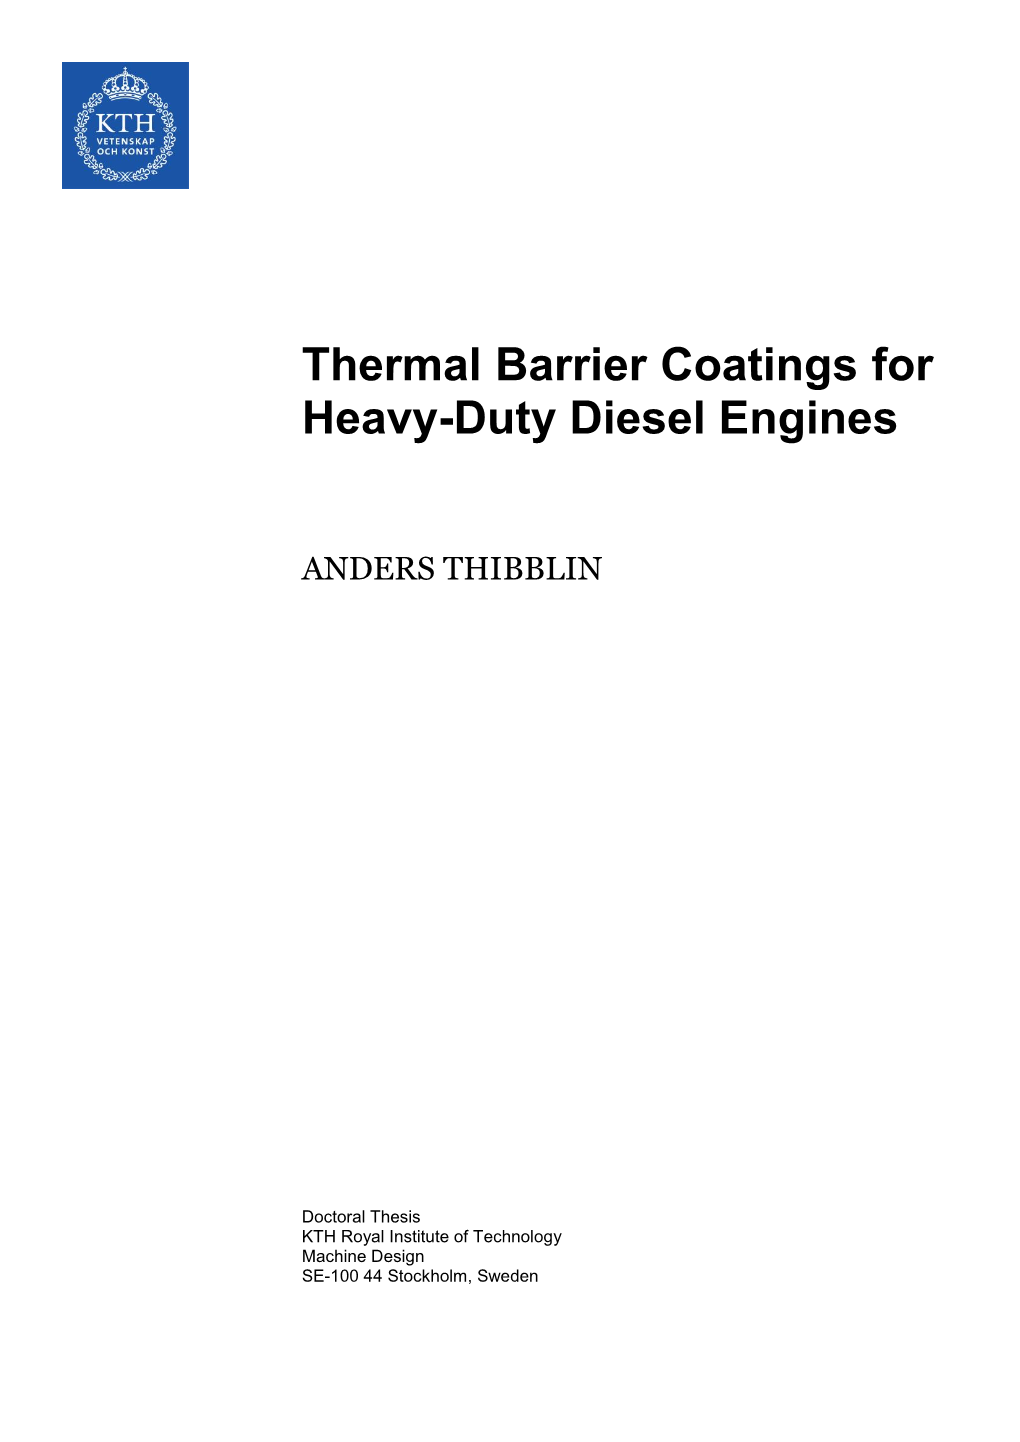 Thermal Barrier Coatings for Heavy-Duty Diesel Engines